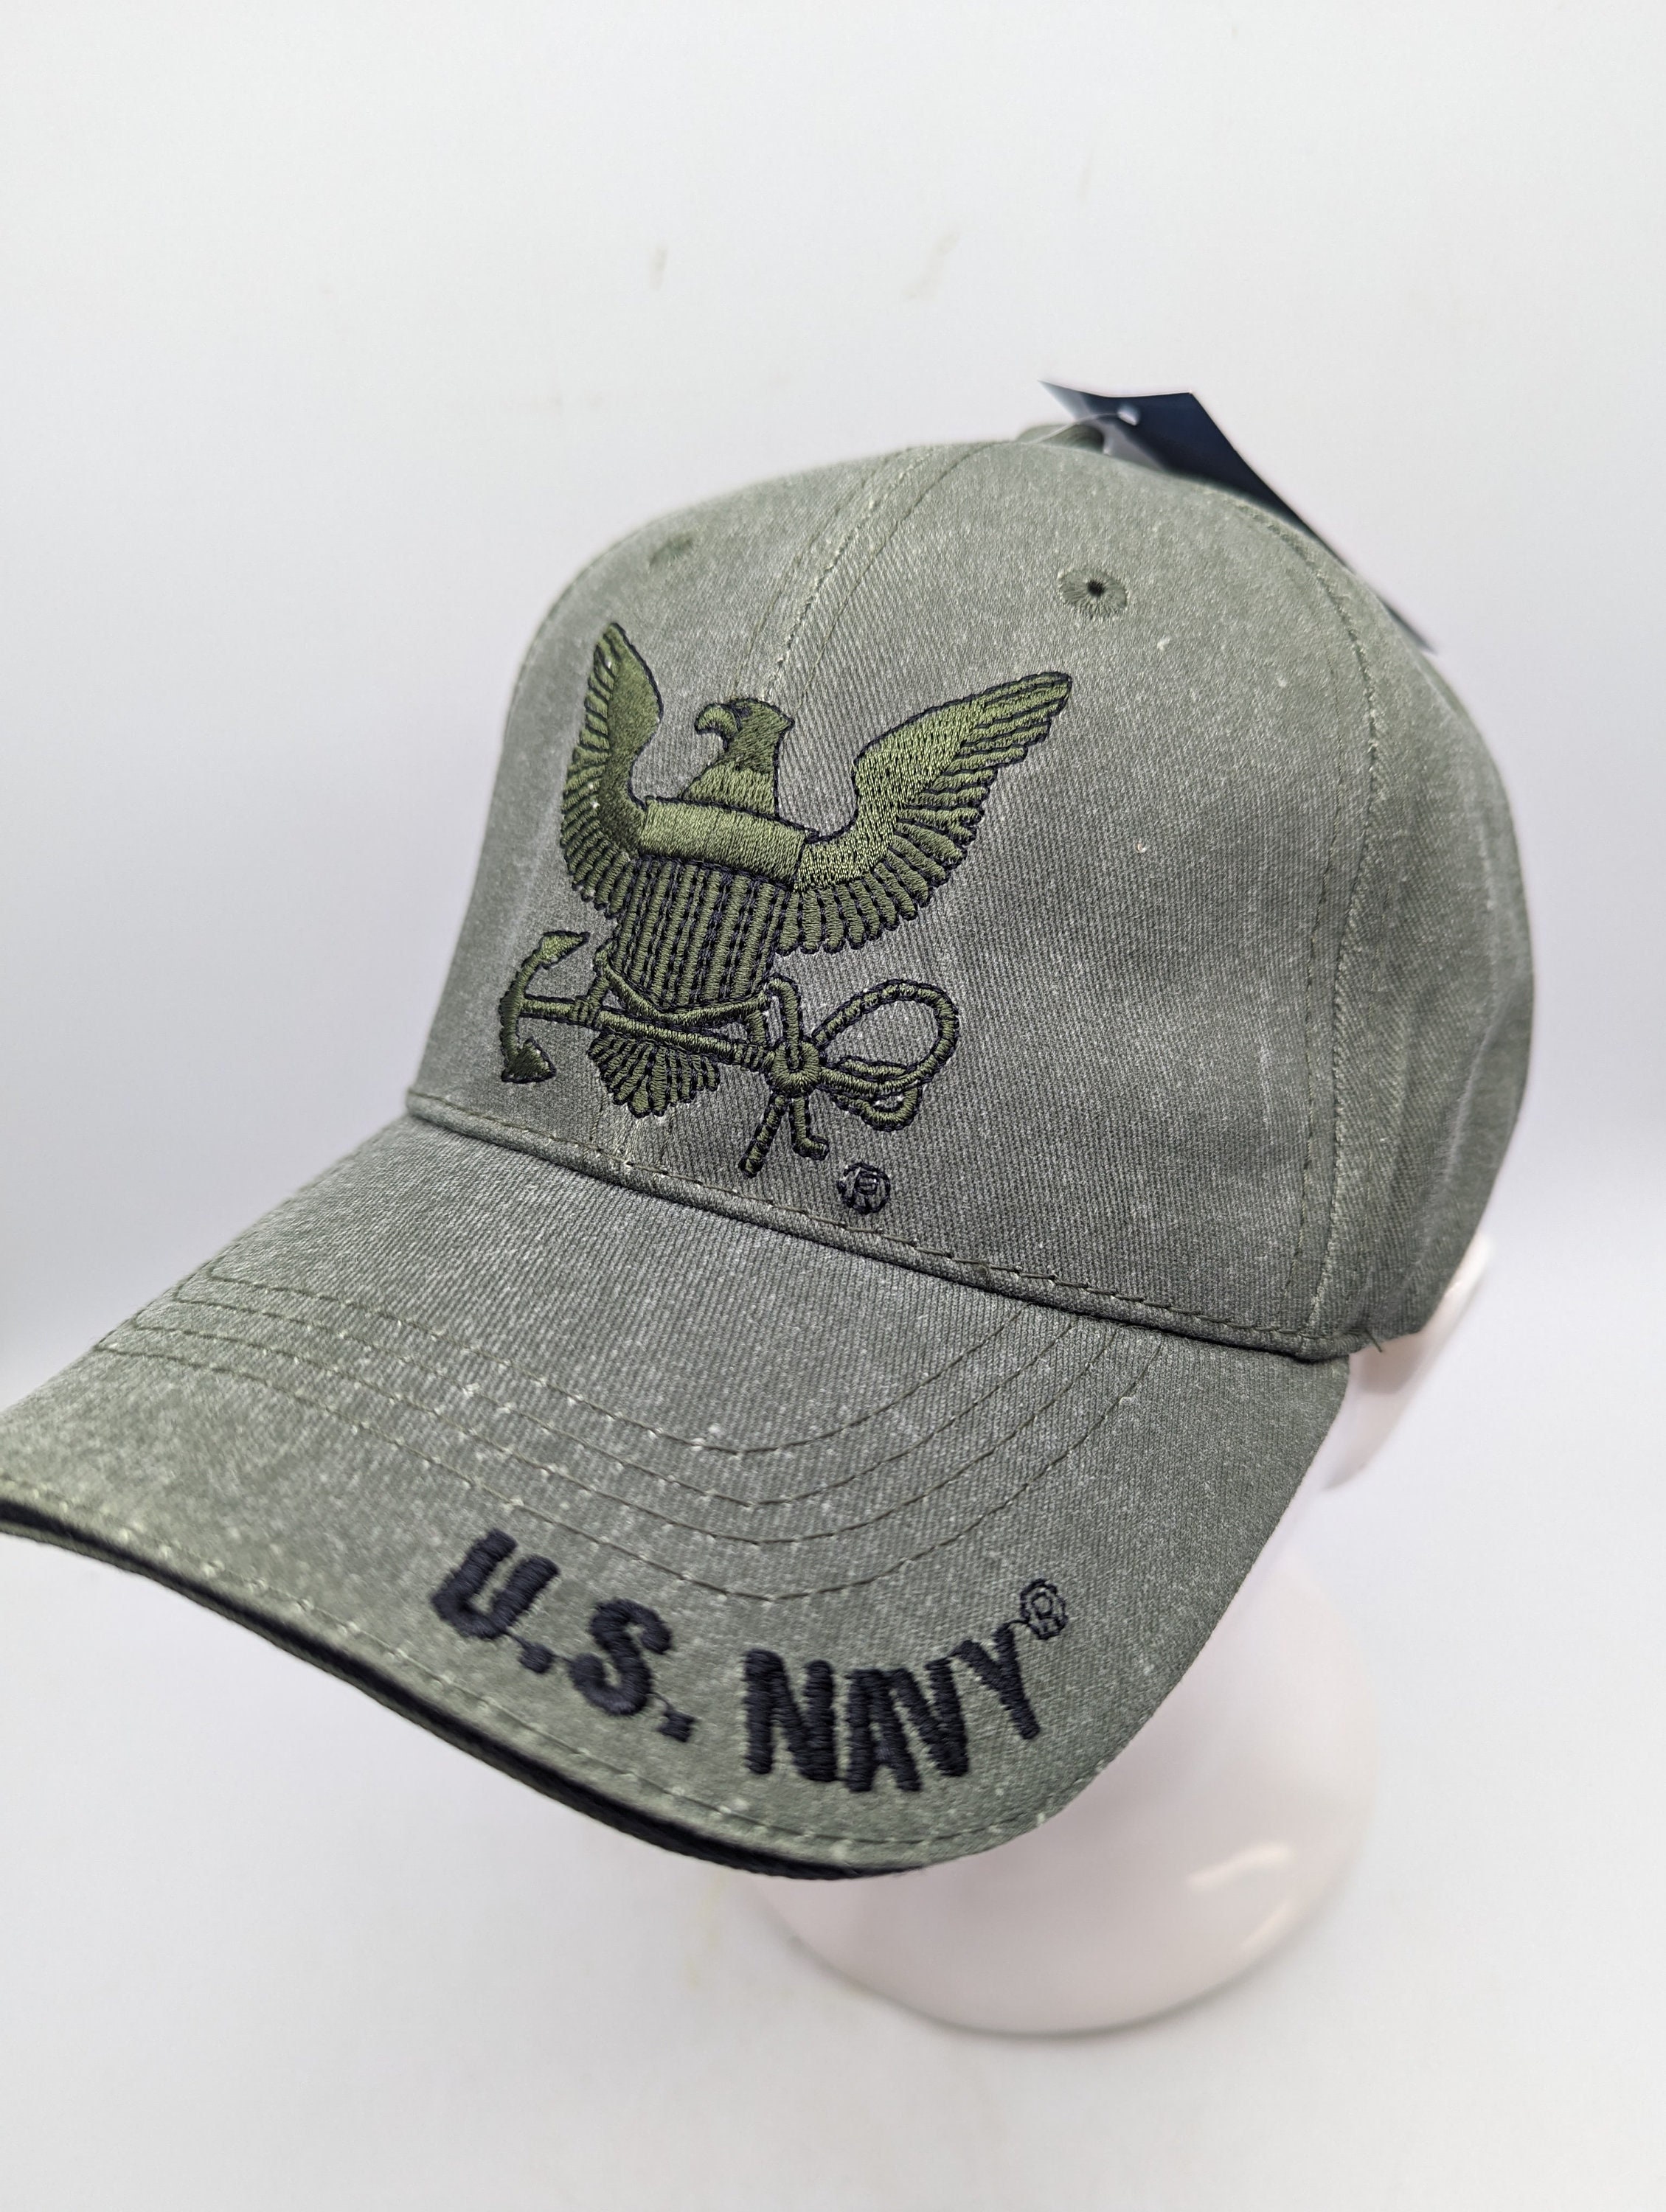 Two Tone Trucker Hats - Navy Blue Blank Trucker Cap – Bewild